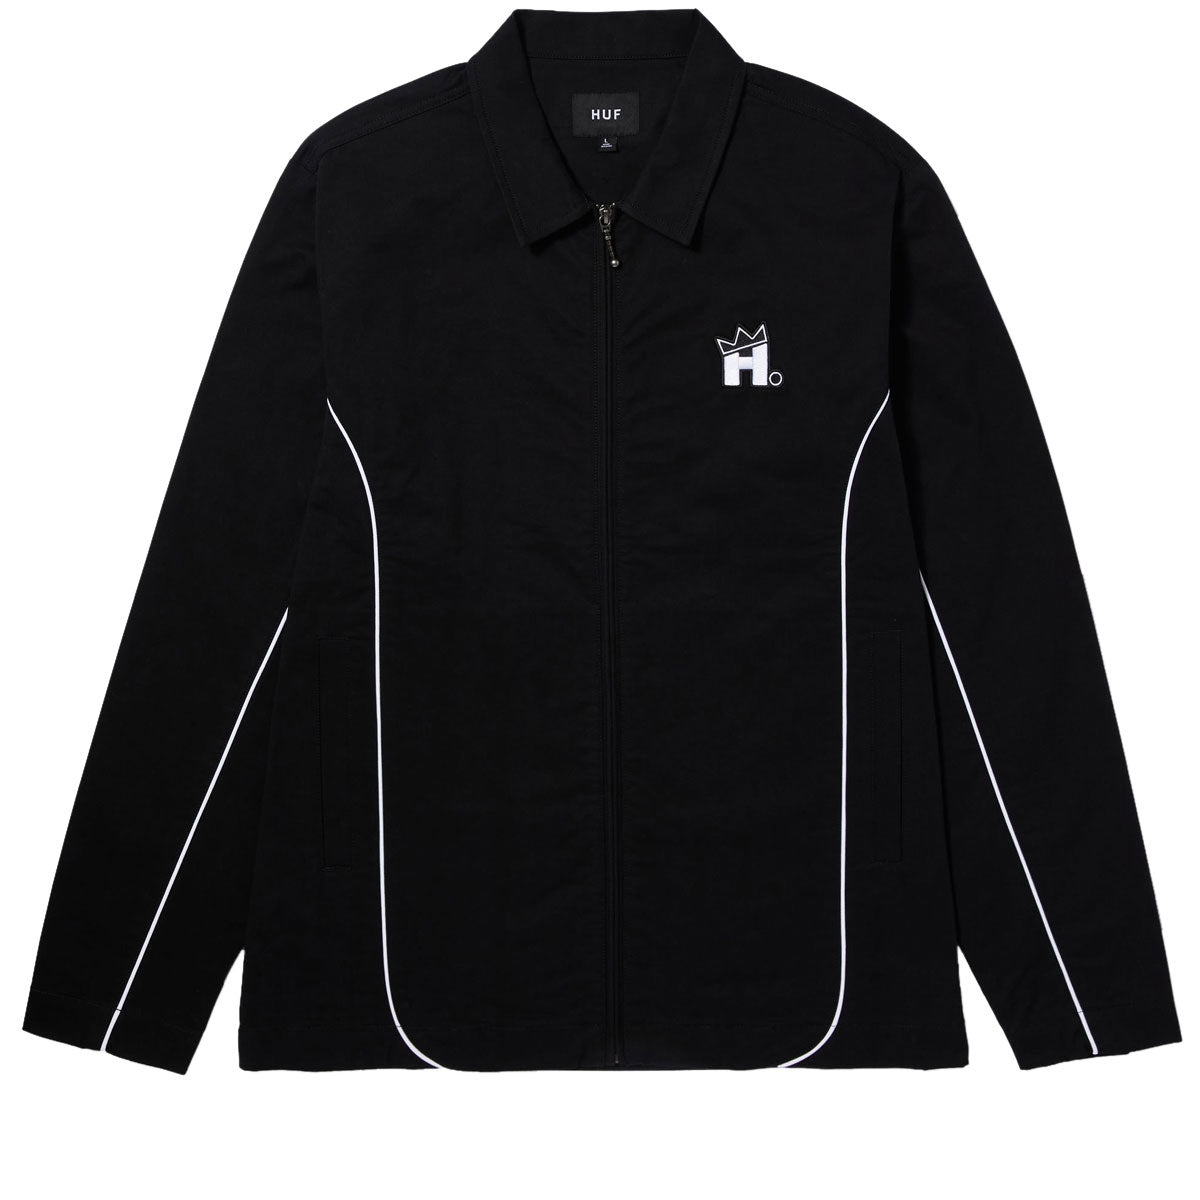 HUF Norton Shacket Jacket - Black image 1